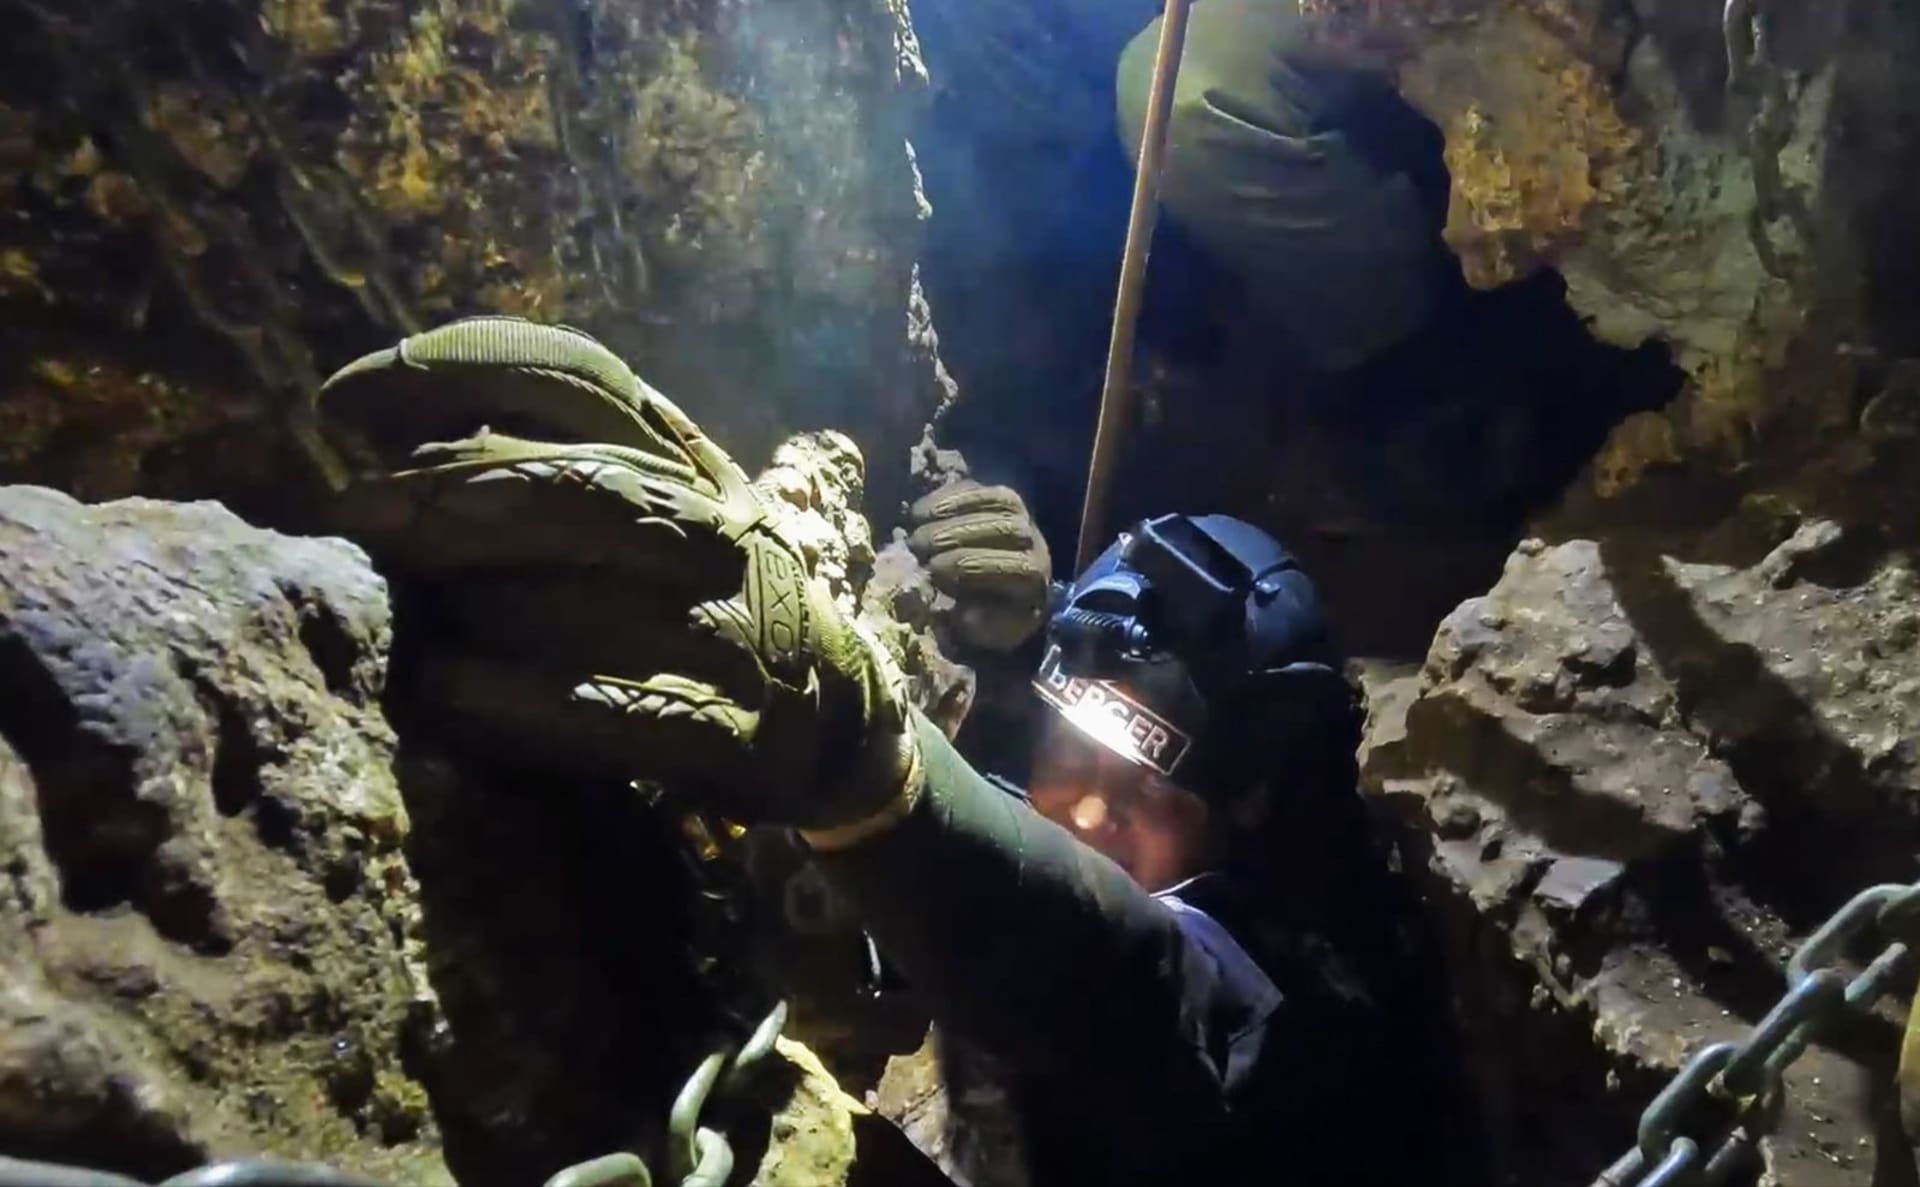 Vedoucí expedice vykopávek Dr. Lee Berger uvnitř jeskyně Rising Star